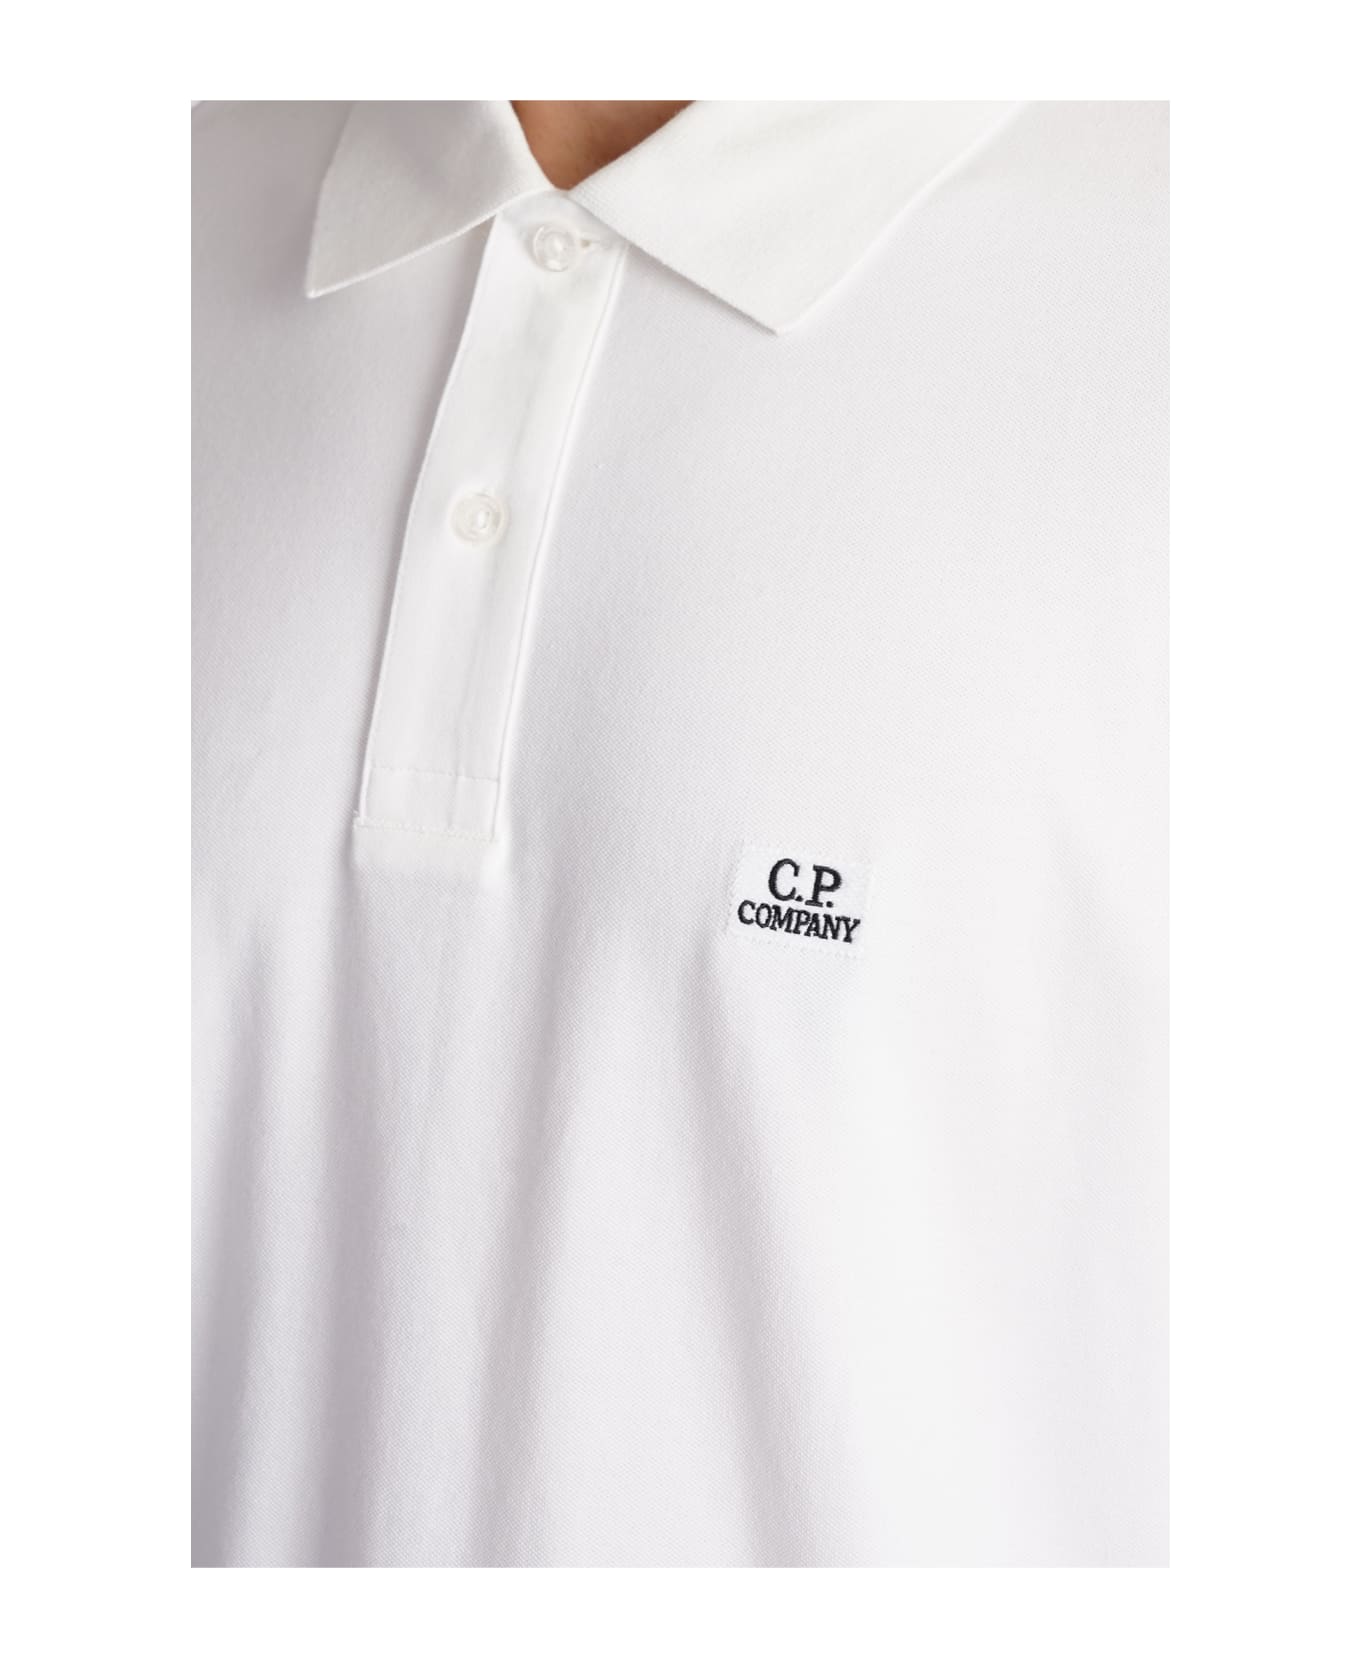 C.P. Company Polo In White Cotton - white ポロシャツ